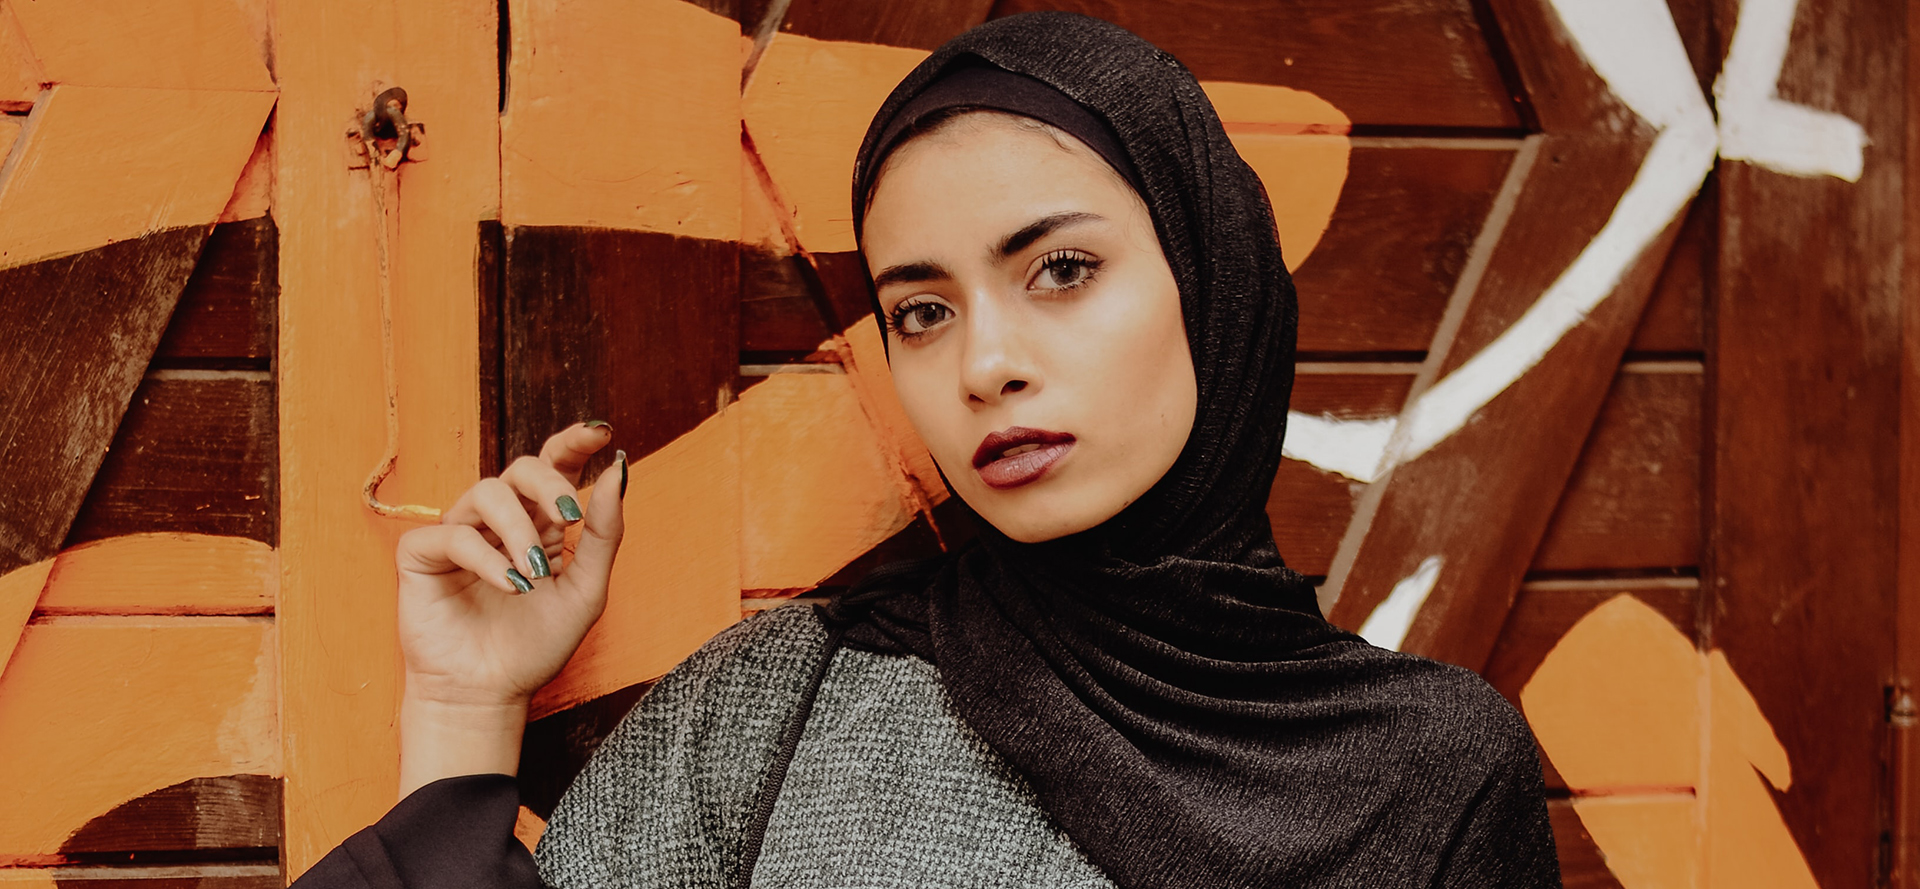 Arabisk kvinde i sort tørklæde.